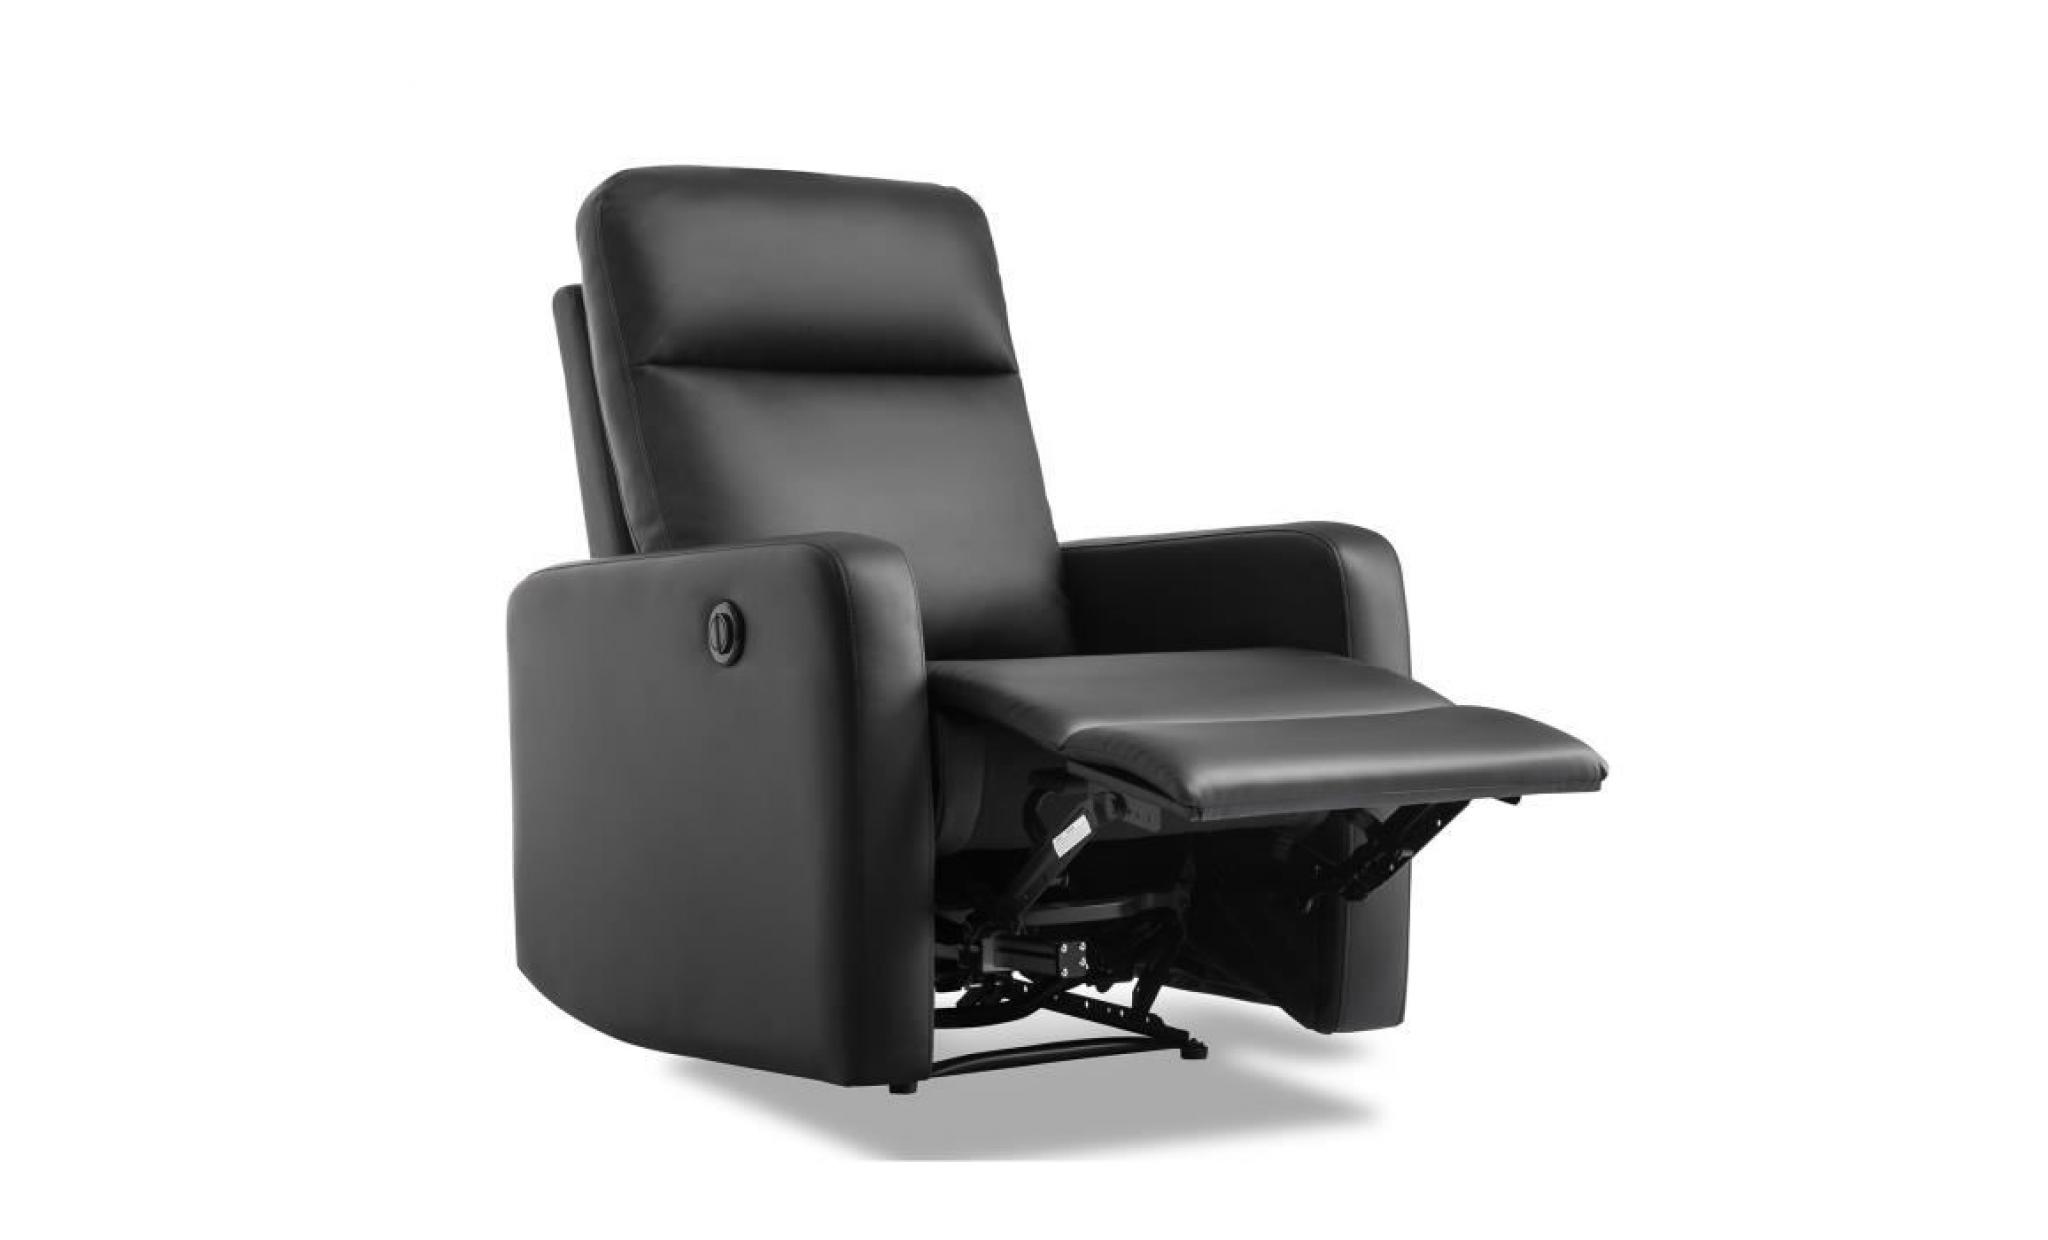 fauteuil de relaxation électrique   simili noir   classique   l 76 x p 88 cm